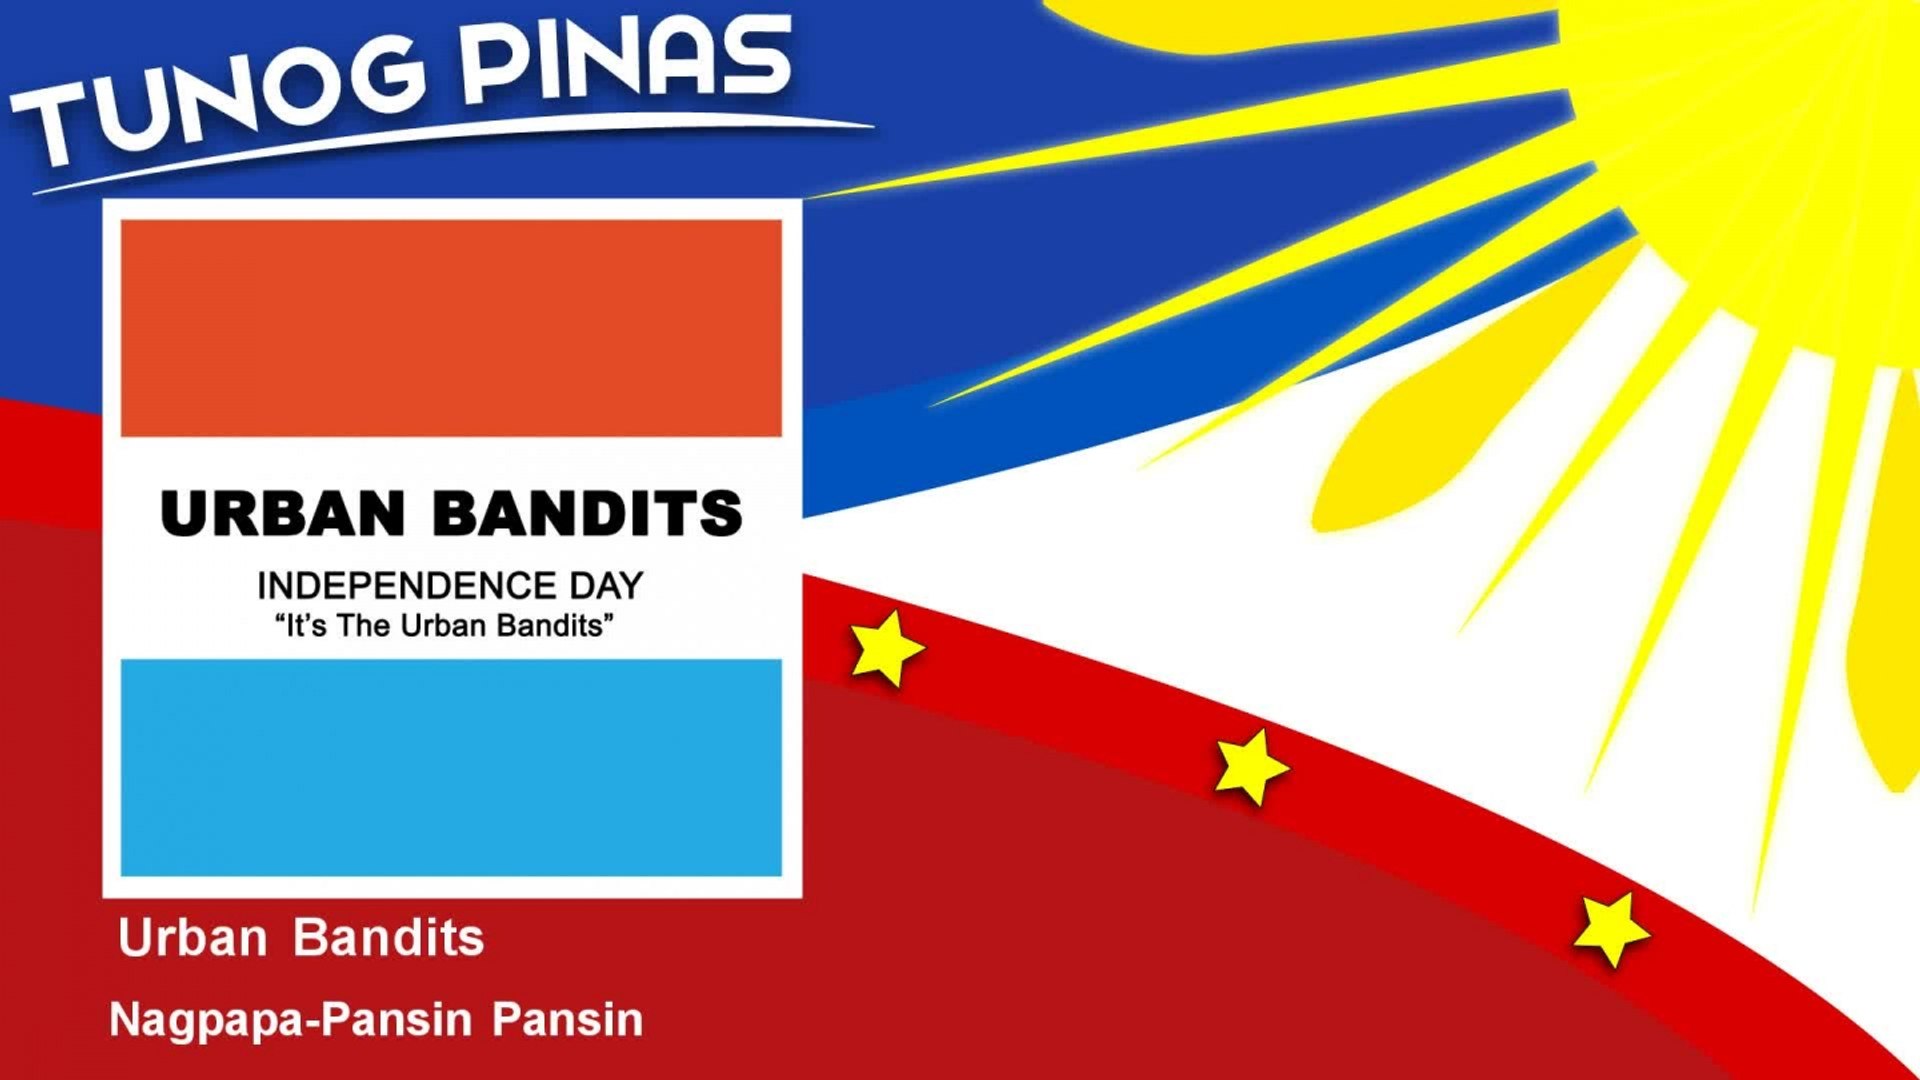 Urban Bandits - Nagpapa-Pansin Pansin